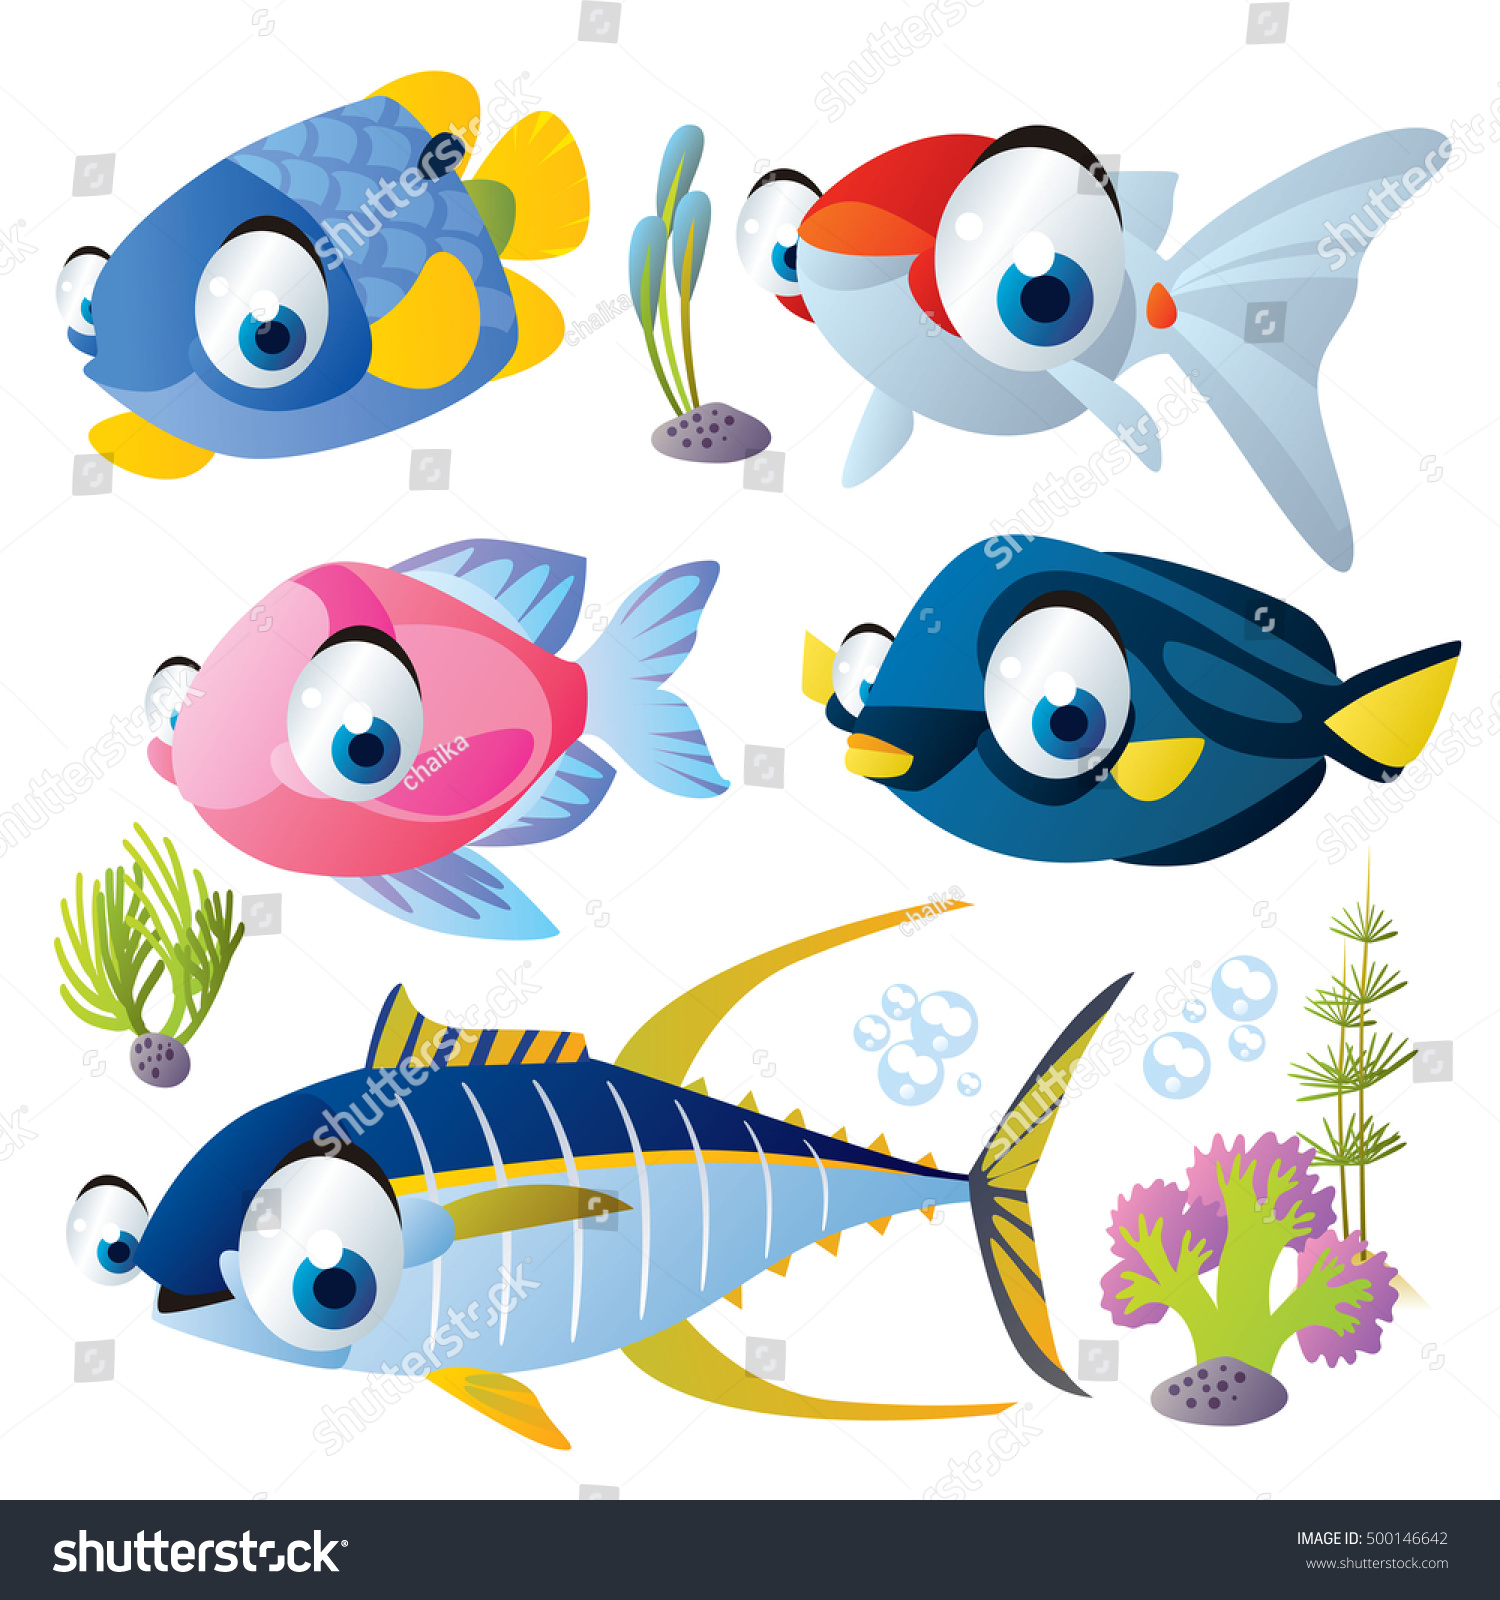 zebrafish clipart - photo #35